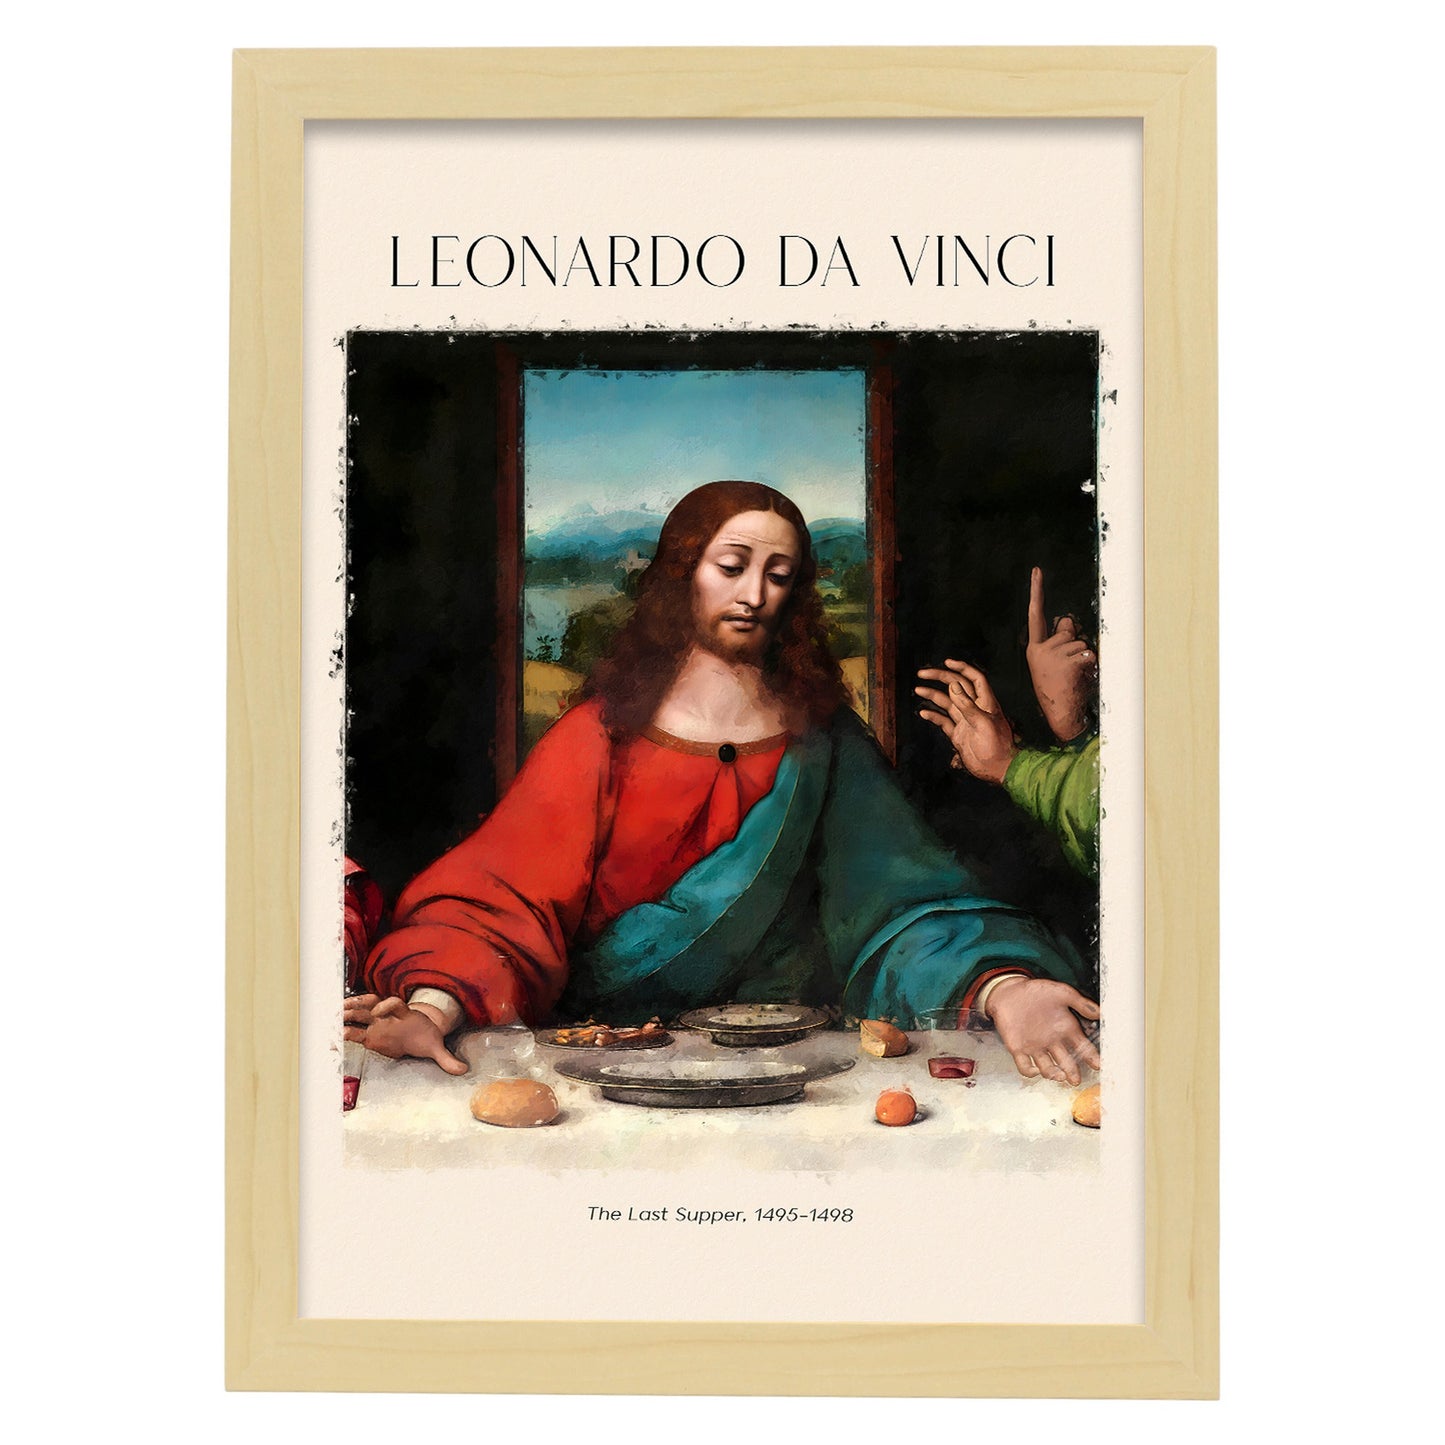 Lámina decorativa de La Última Cena inspirada en Leonardo da Vinci